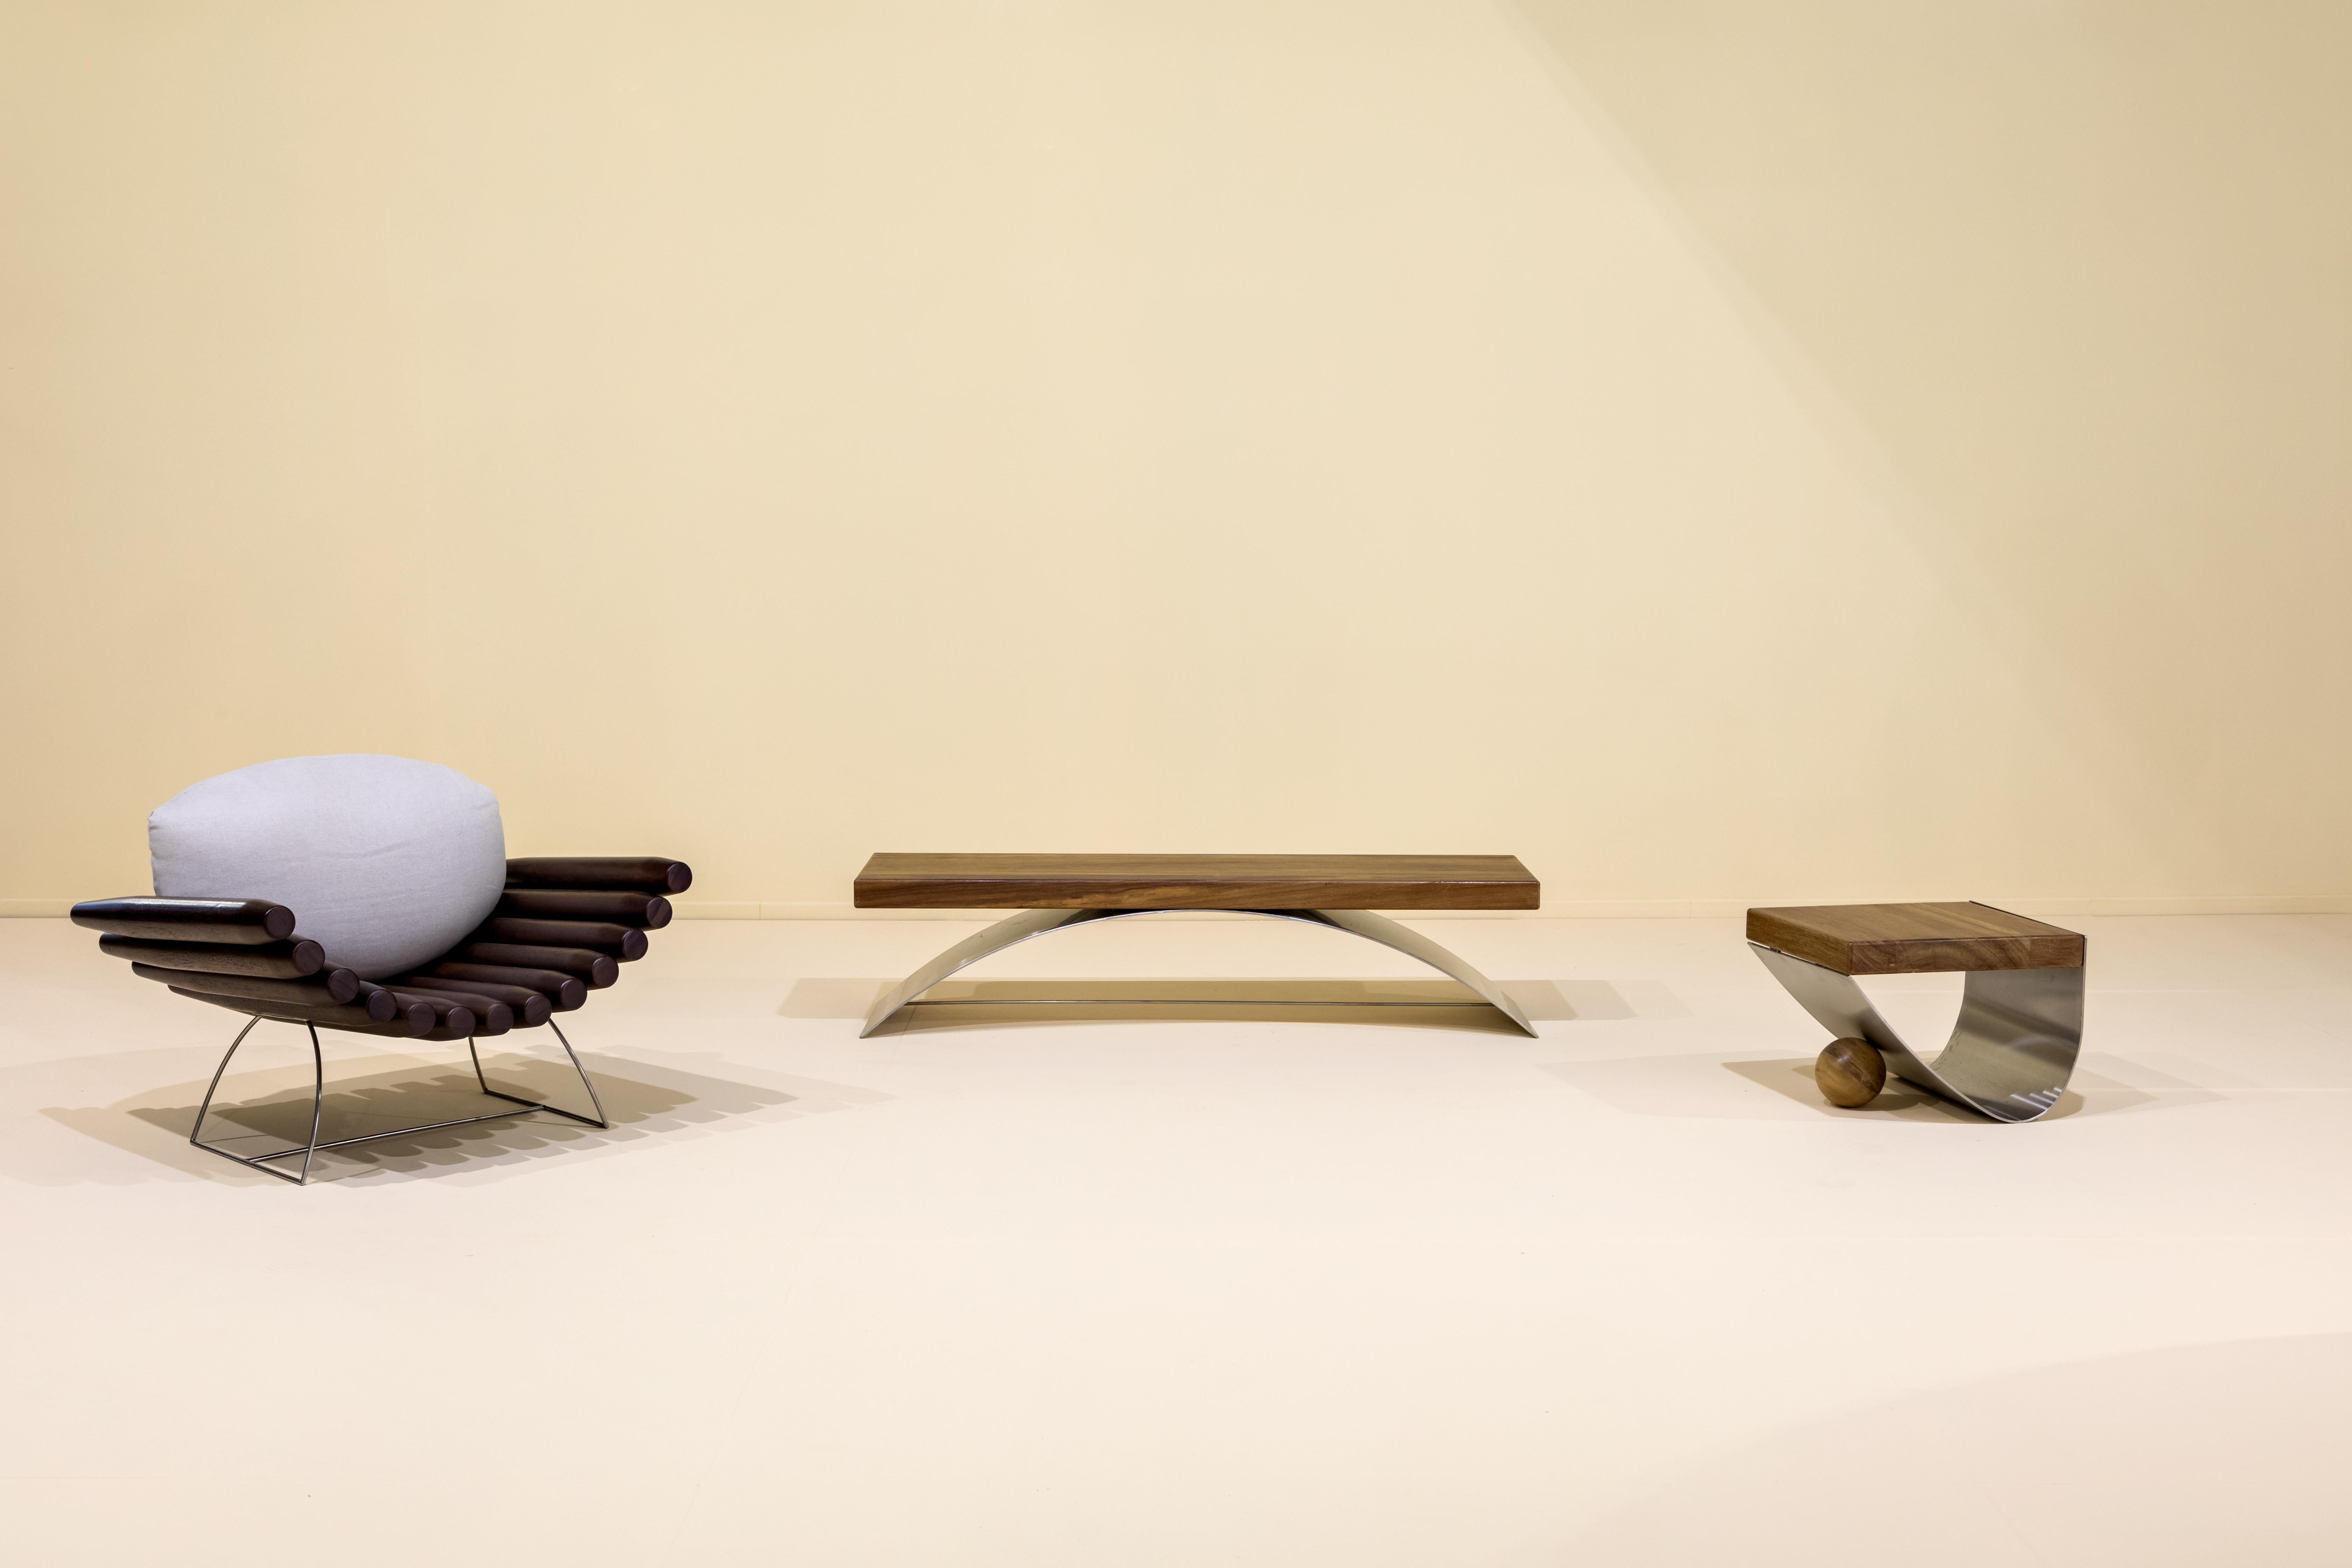 Le banc Balanço a été créé par le designer contemporain brésilien Rodrigo Ohtake, en 2019.

Le mélange de matériaux est le différentiel dans cette série. Alors que le bois est utilisé comme siège, une plaque métallique, épaisse et incurvée, soulève